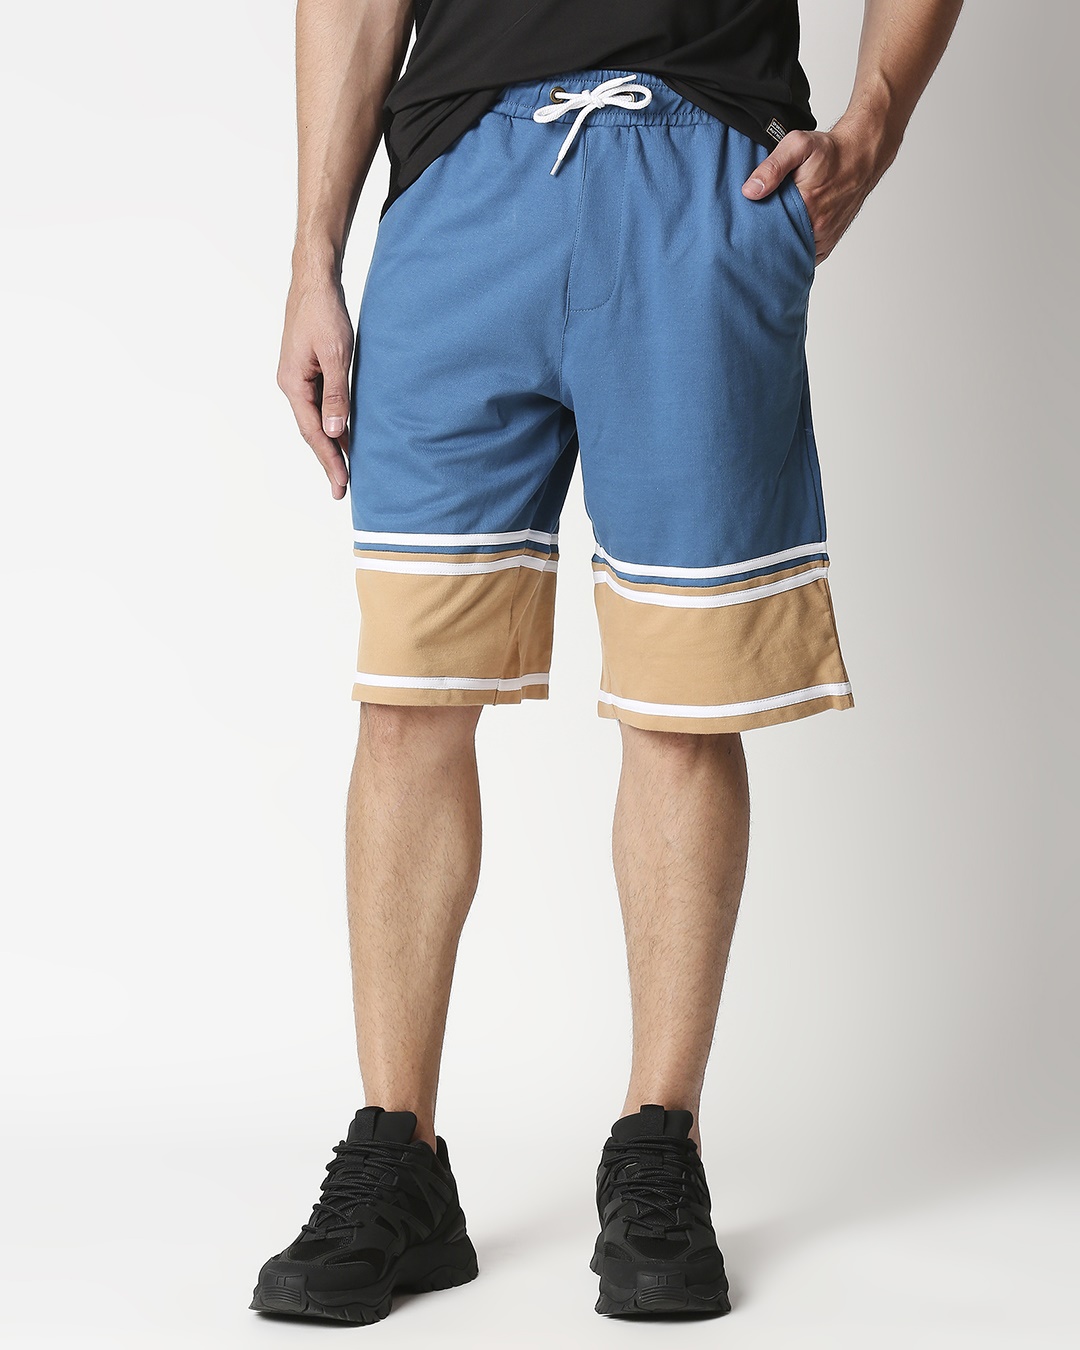 Digital Teal Men's Terry Color Block Shorts